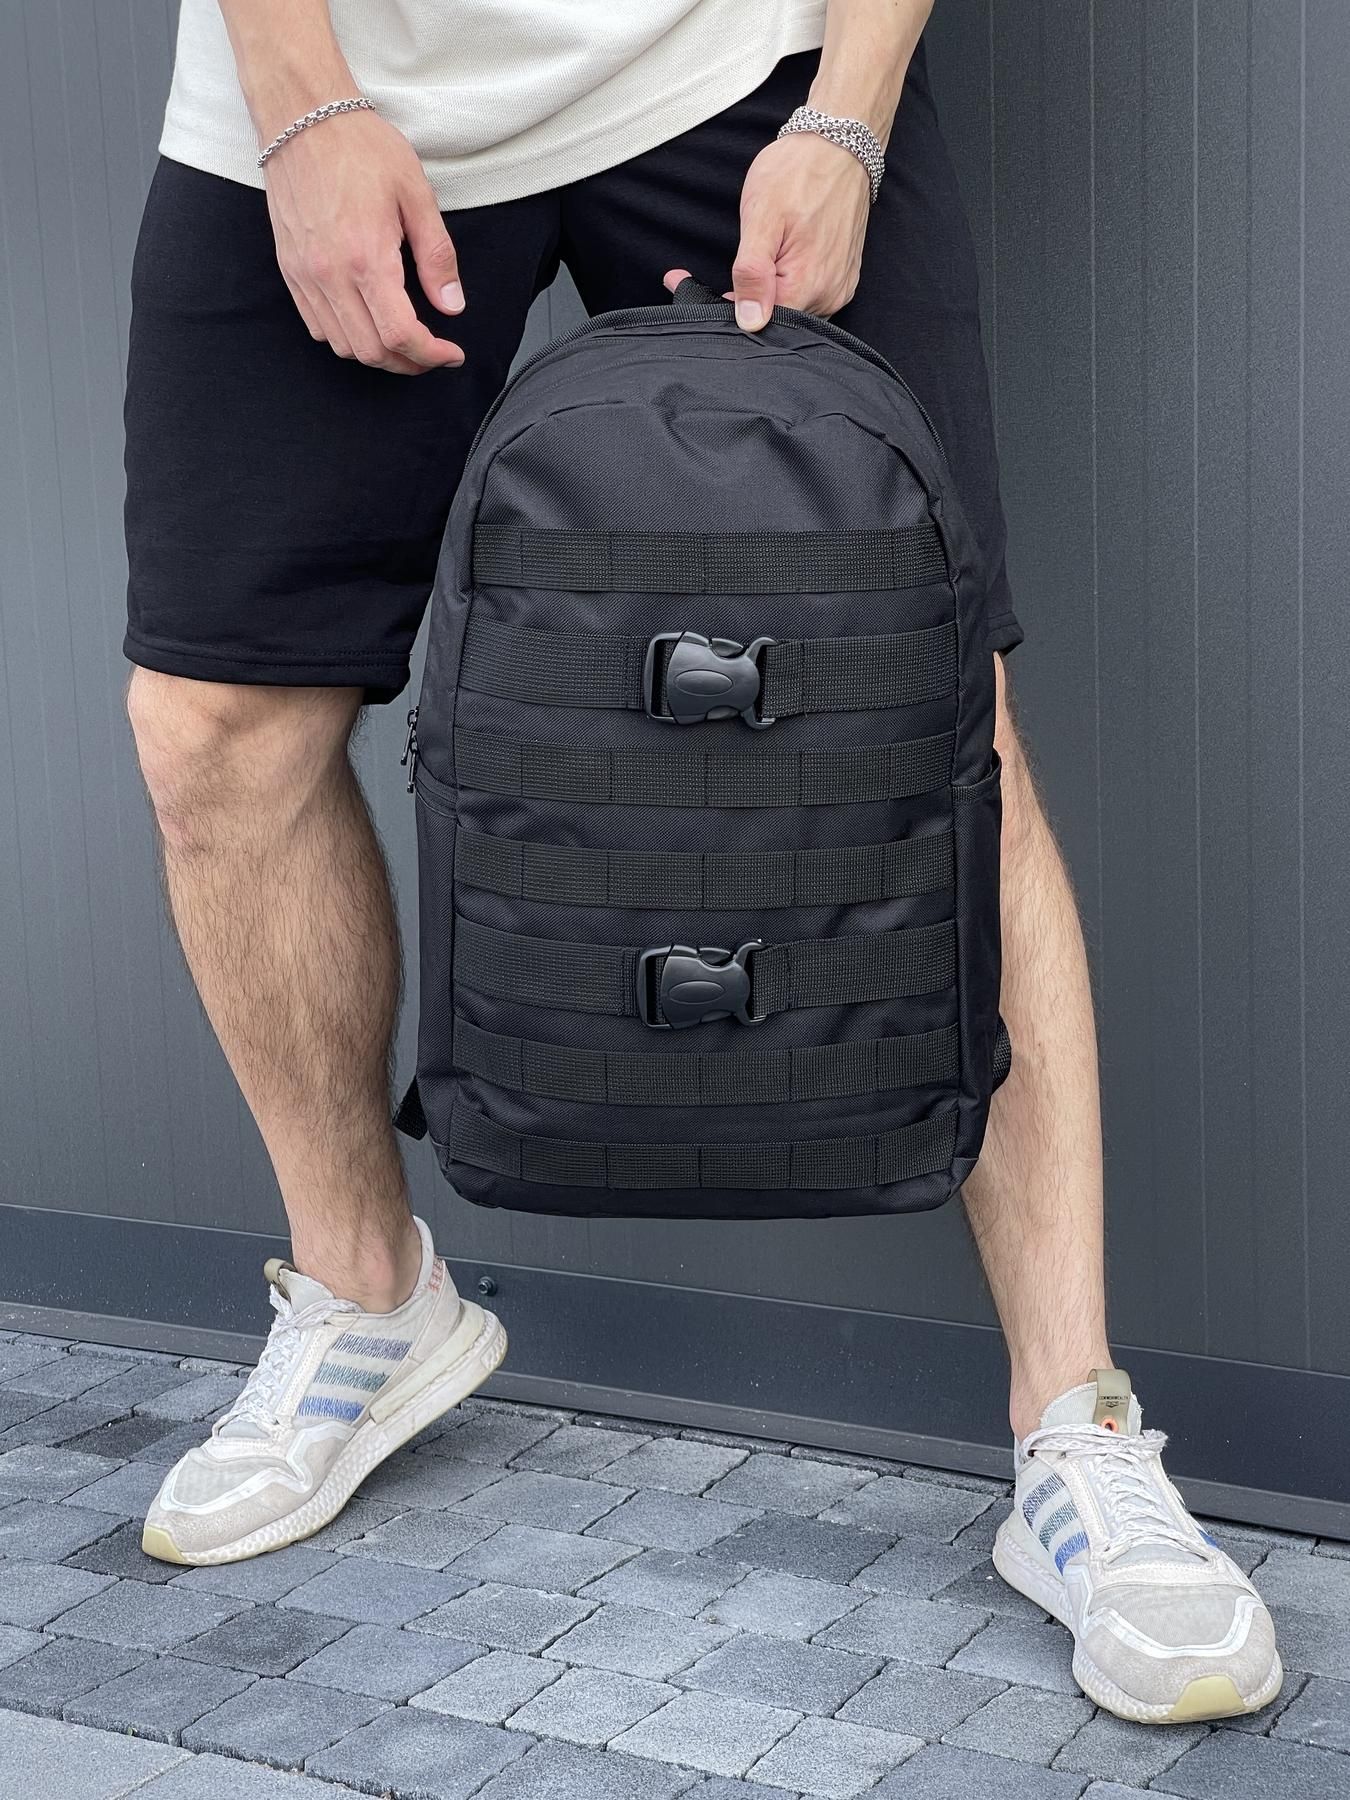 Чёрный мужской портфель на два отделения, рюкзак fazan V2, городской